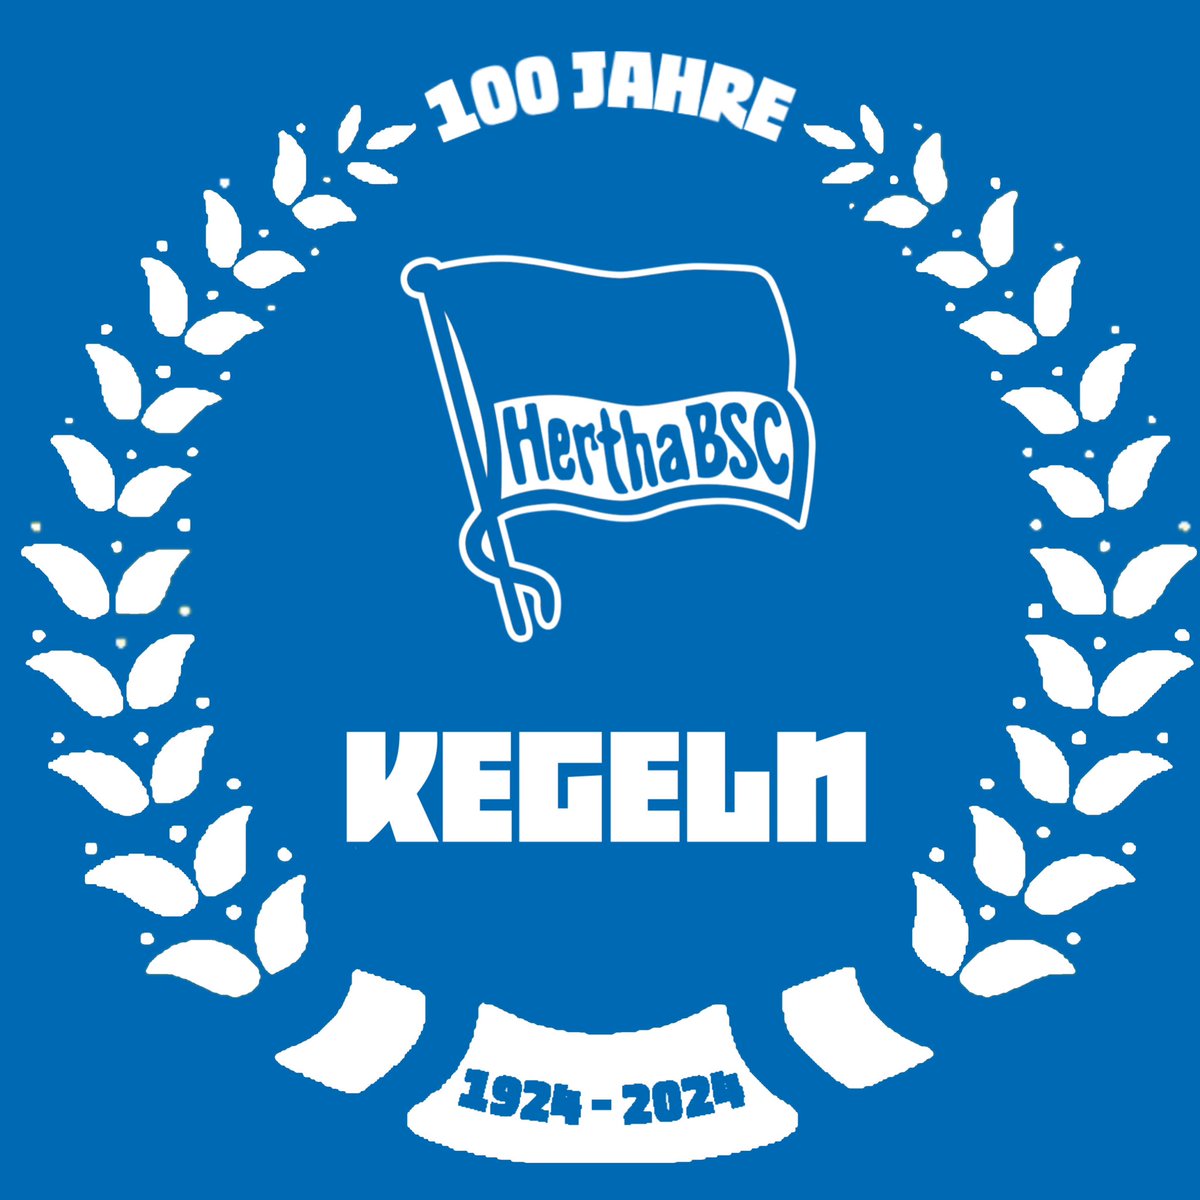 100 Jahre Hertha BSC Kegeln - 1924-2024
#herthabsckegeln #100jahre